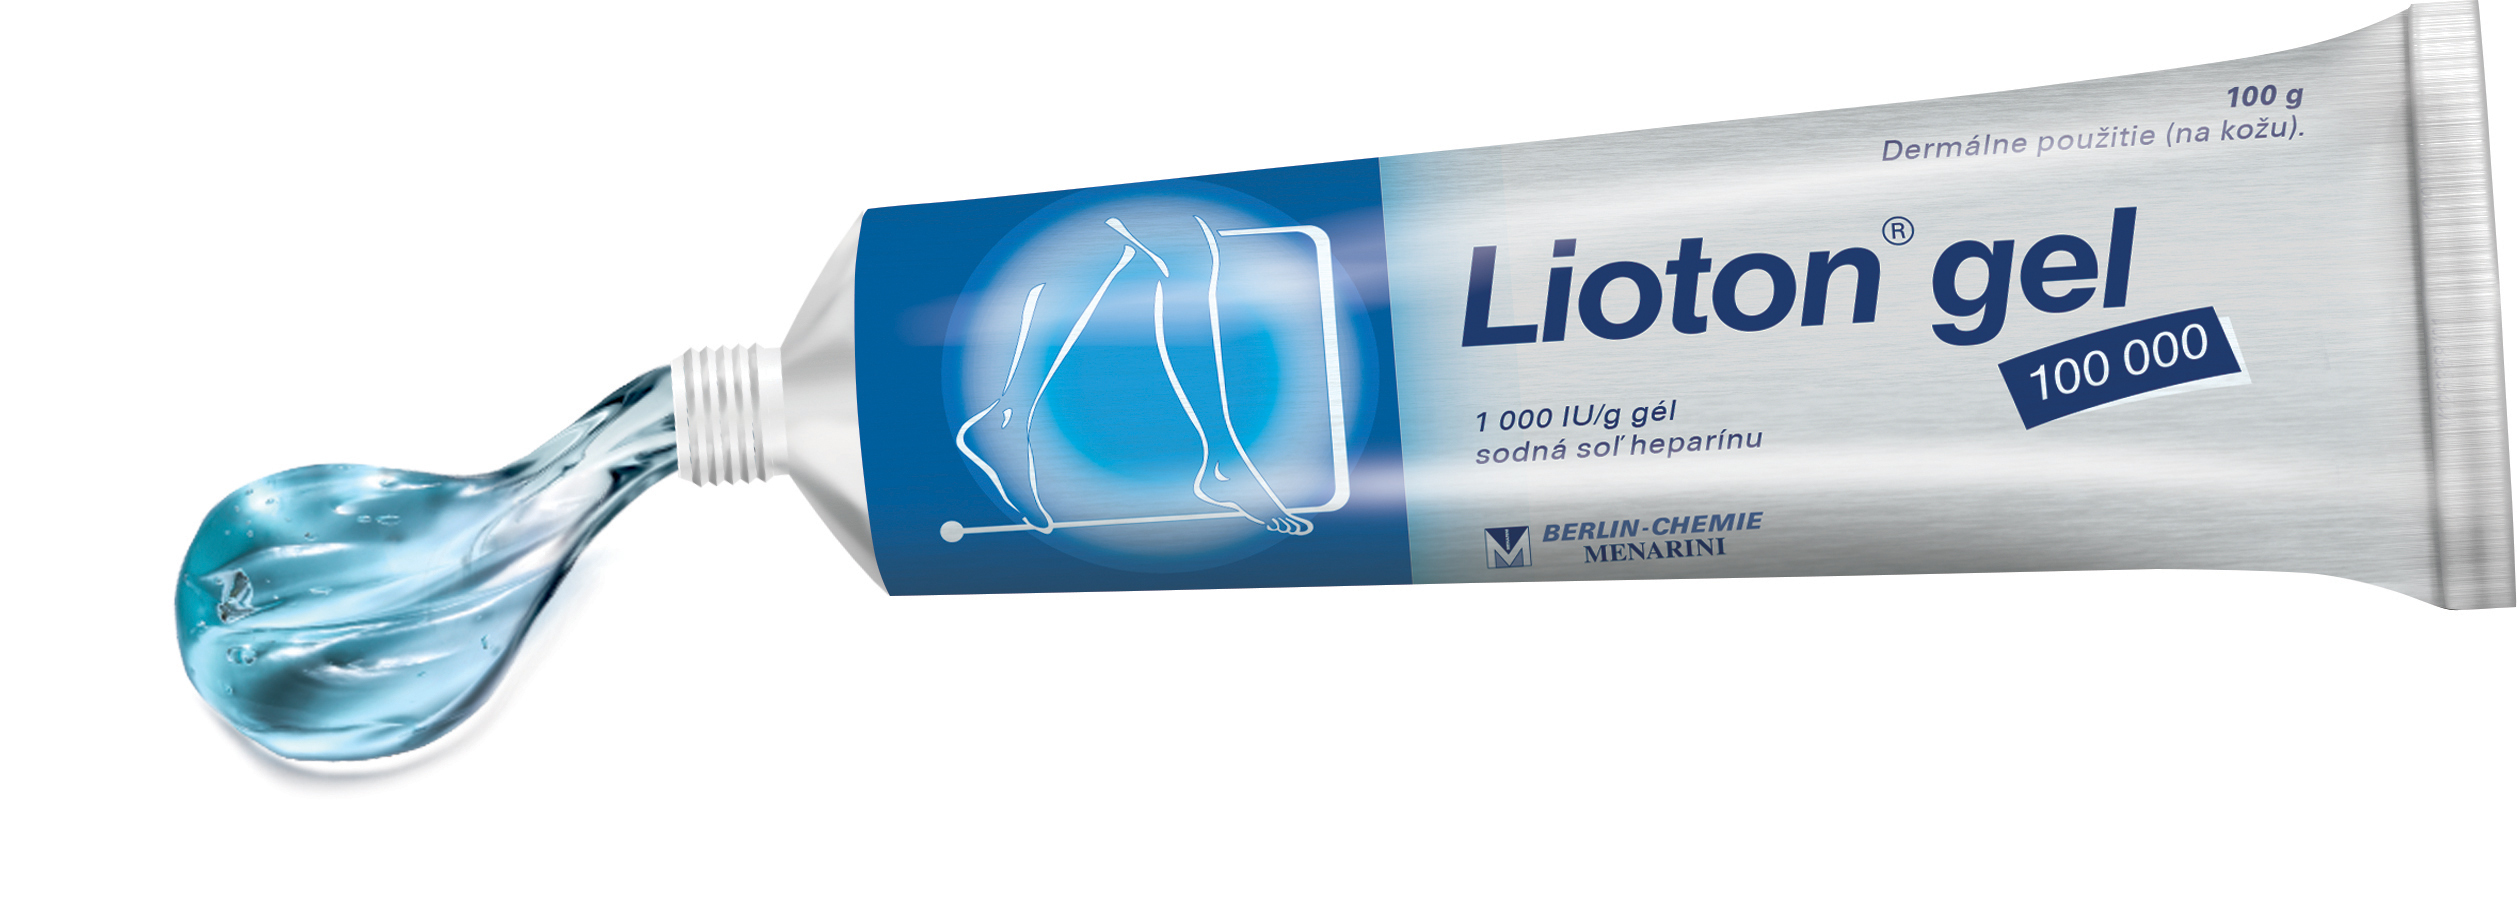 Ako sa Lioton® gel 100 000 používa? 